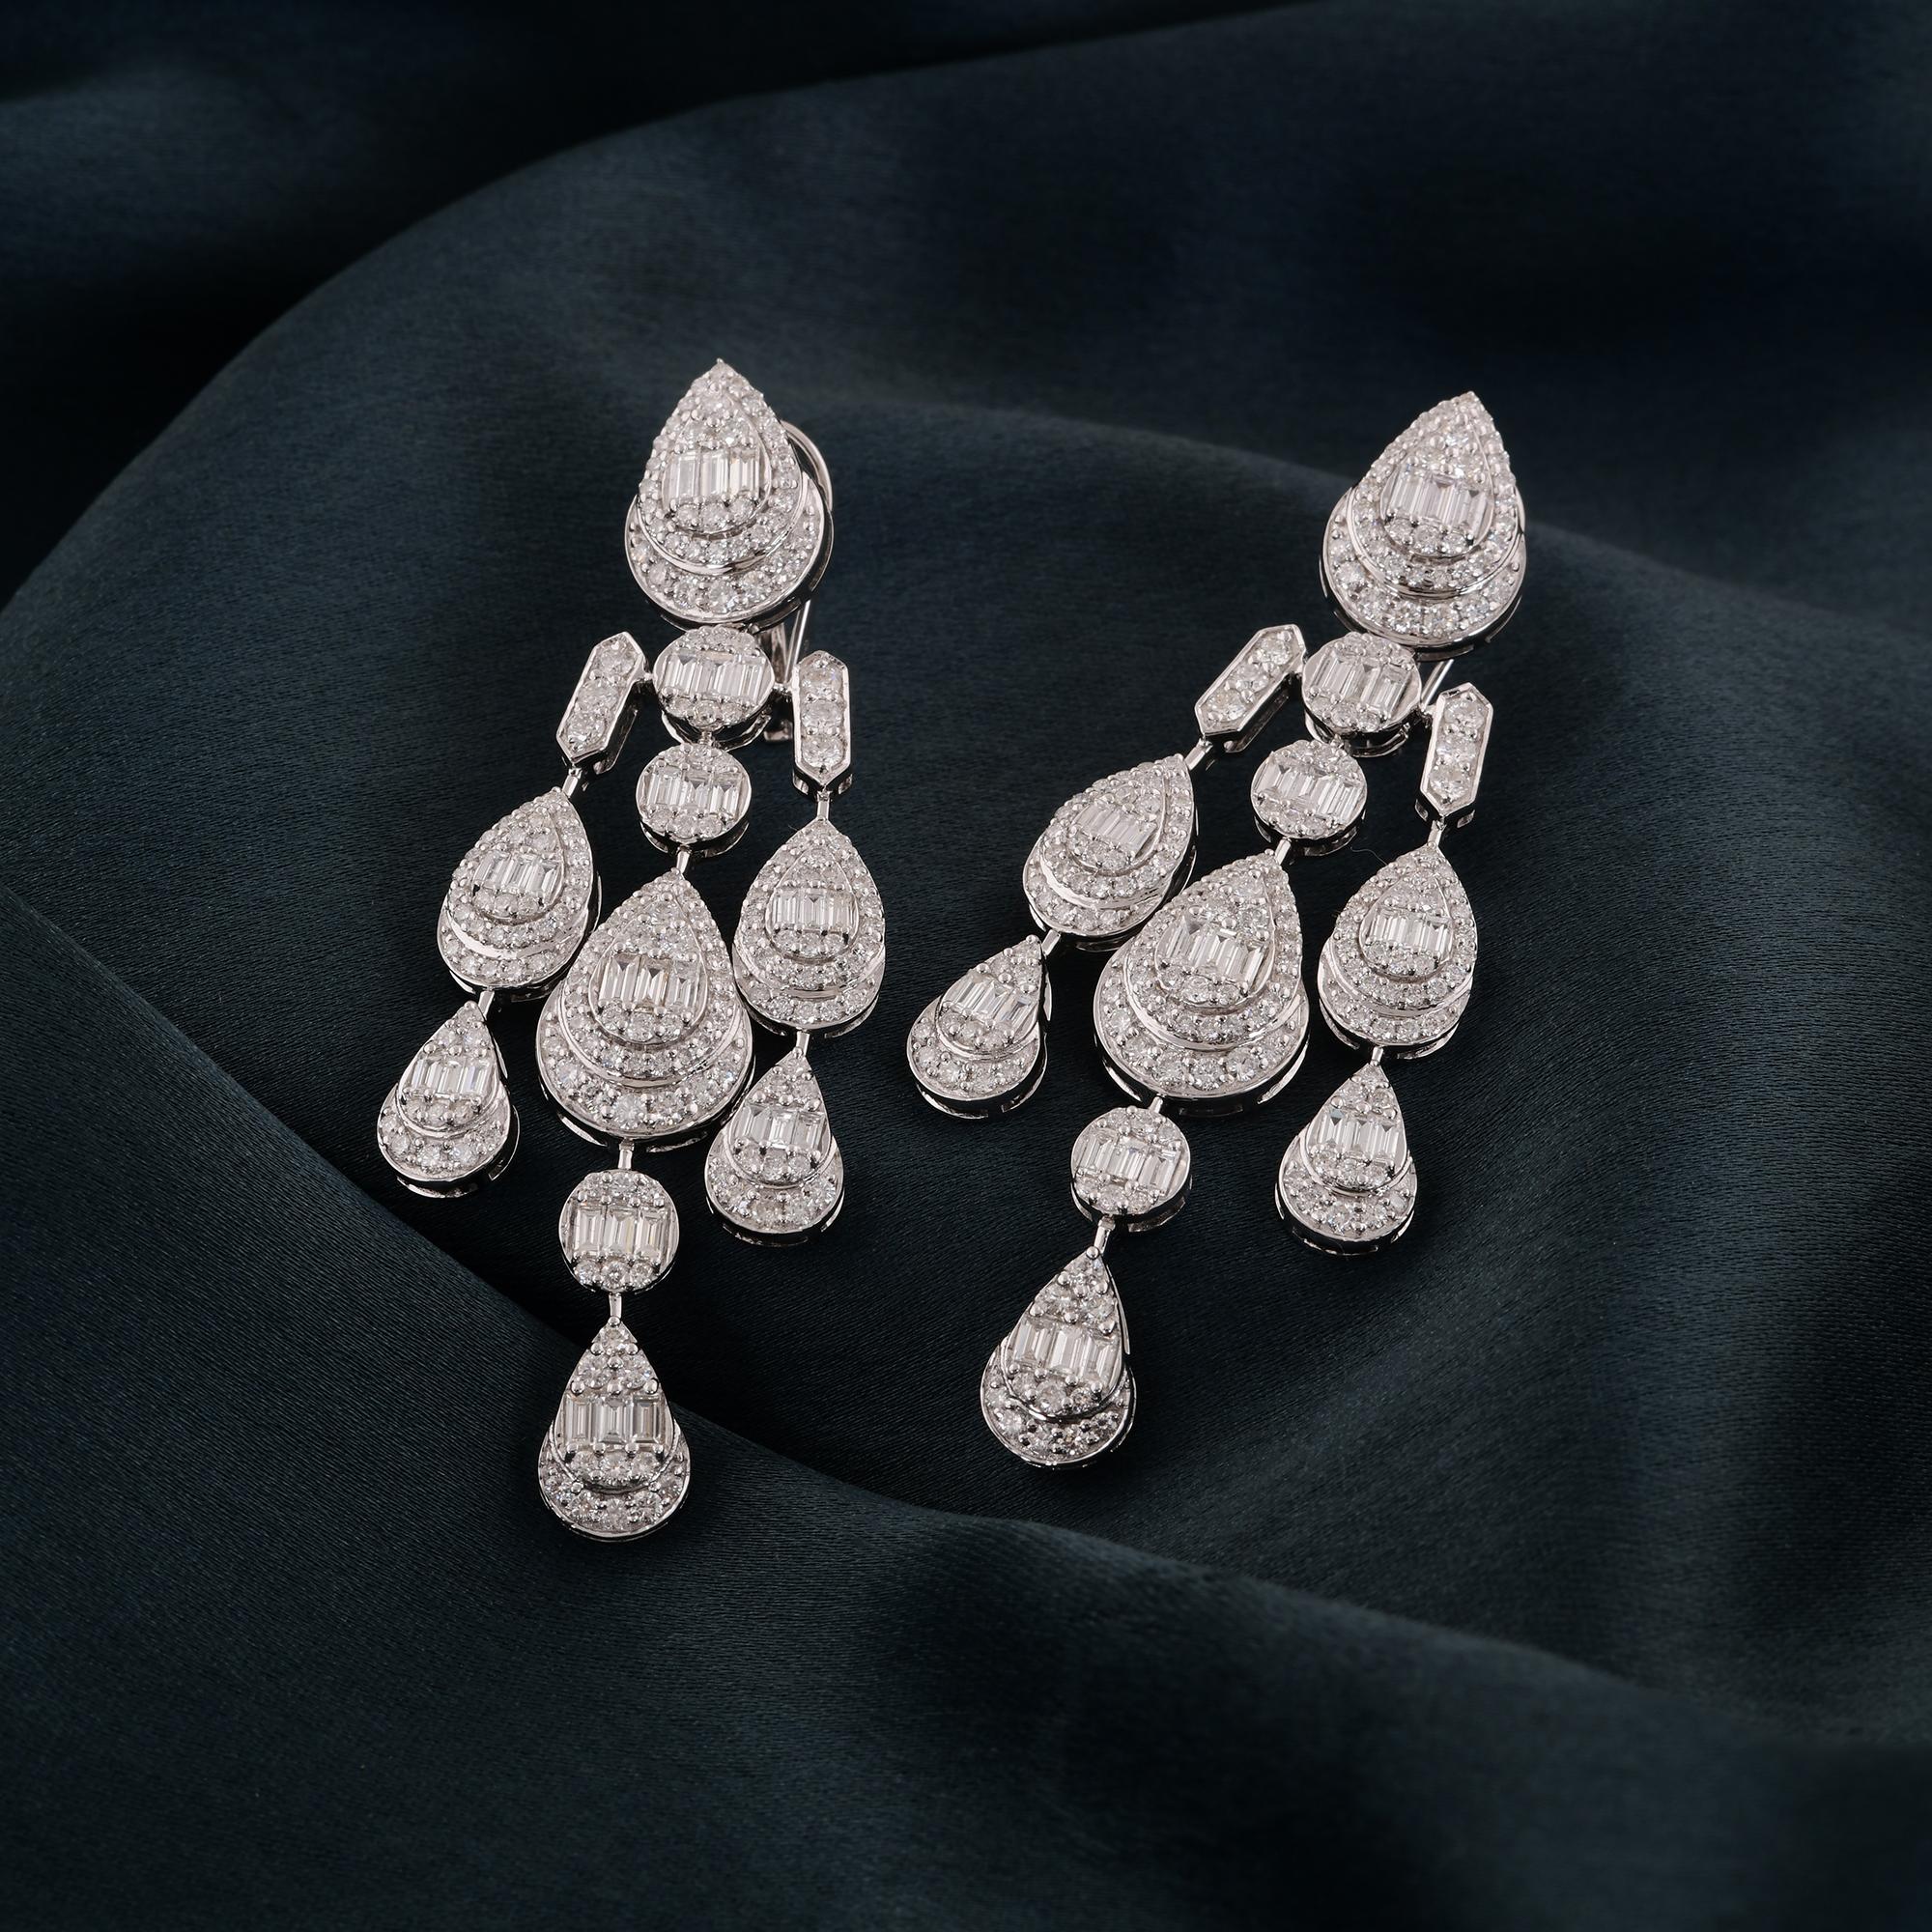 Modern Baguette Diamond Chandelier Earrings Solid 14 Karat White Gold Handmade Jewelry For Sale